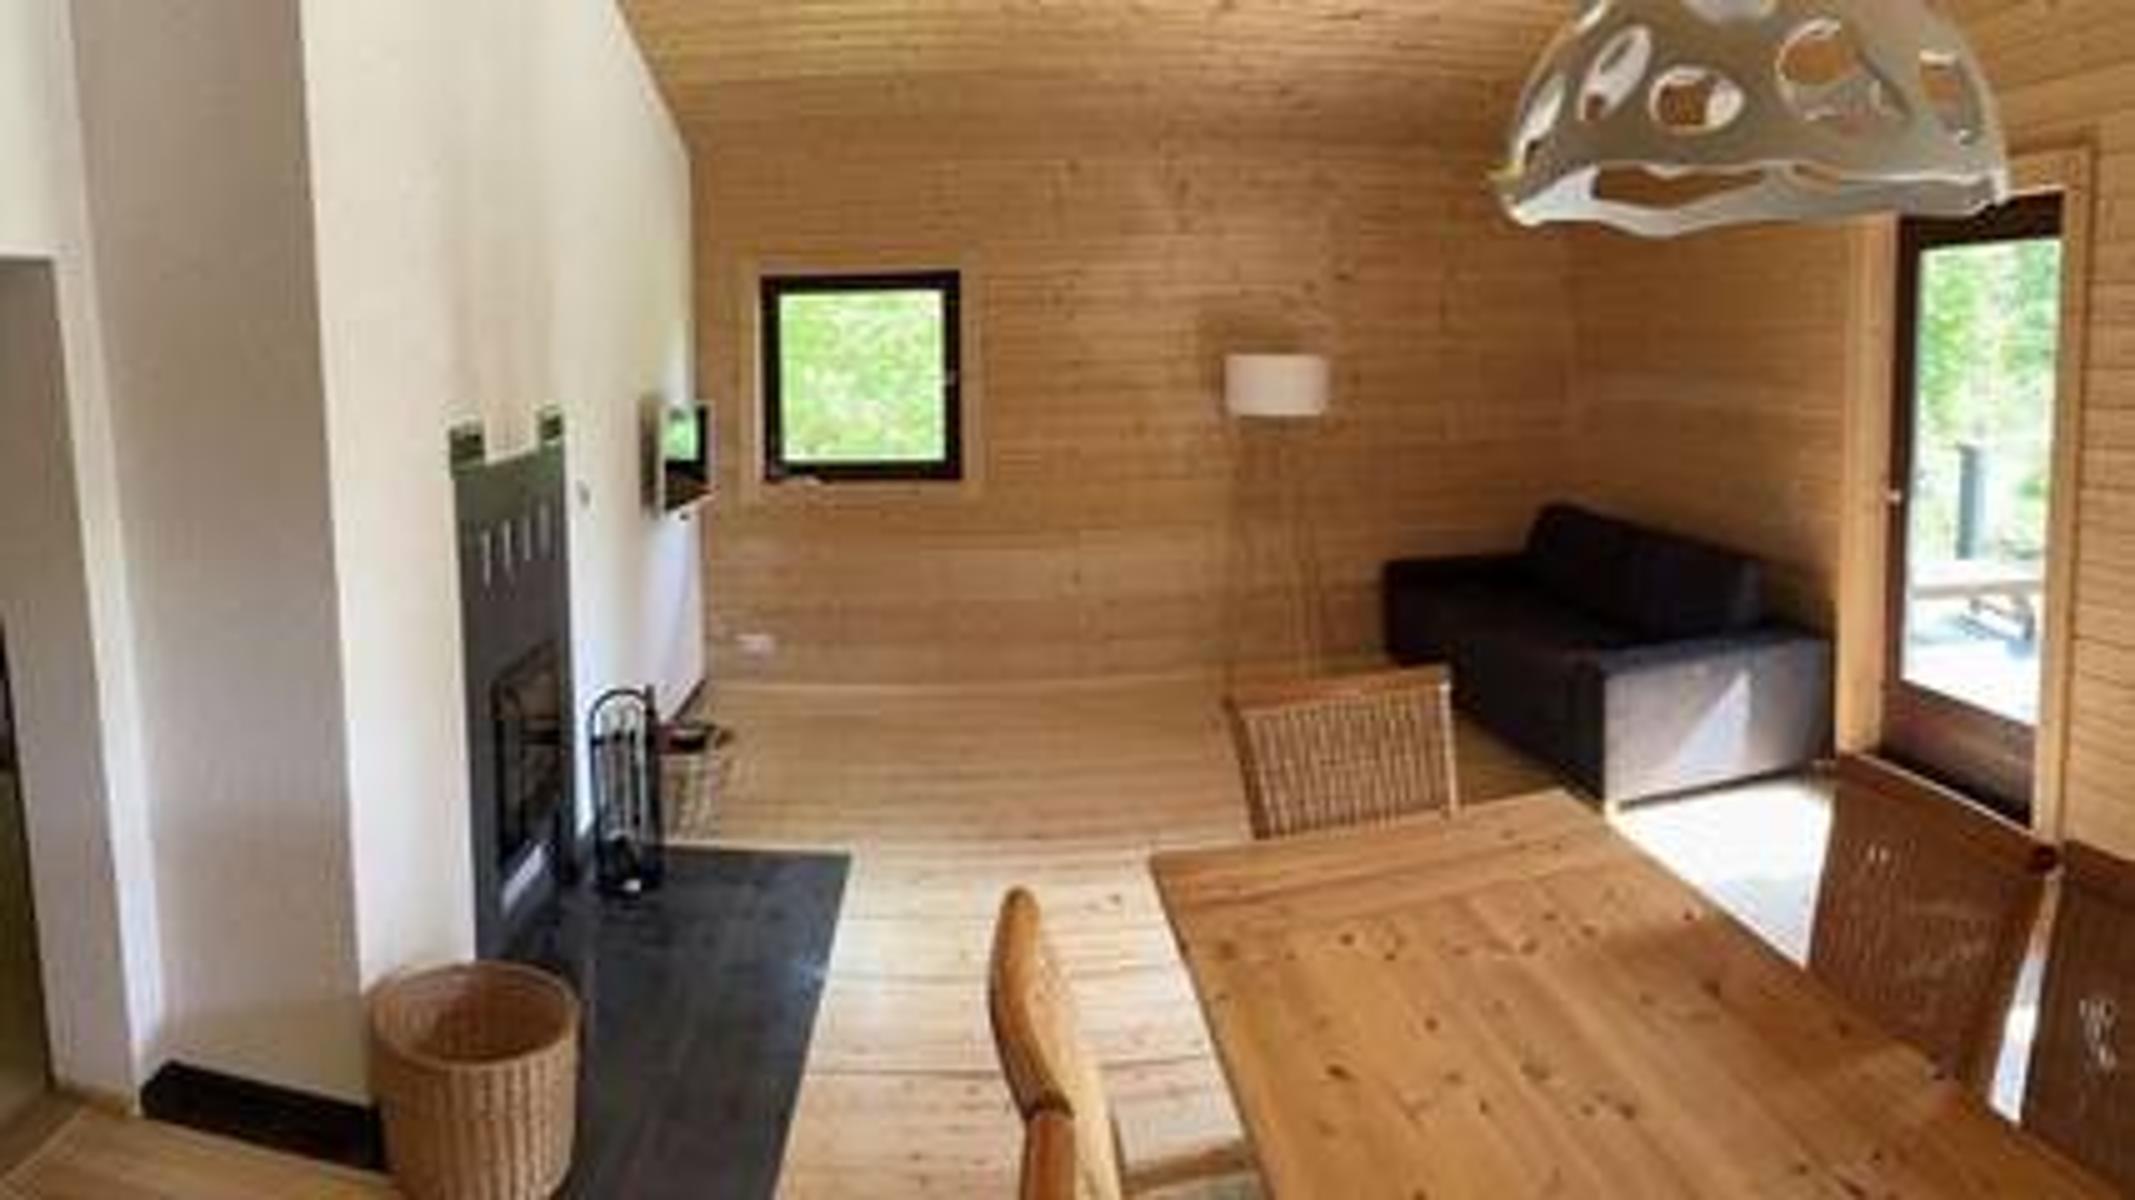 Beschreibung der Unterkunft Das Chalet Vogelsberg ist ein uriges Holzhaus inmitten eines großen eingewachsenen Grundstücks. Hier sind Sie ganz für sich und können mit Familie, Freunden, allein oder zu zweit herrlich entspannen. Eine große Terrasse mit Blick auf die große Wiese, eine eigene Sauna ...